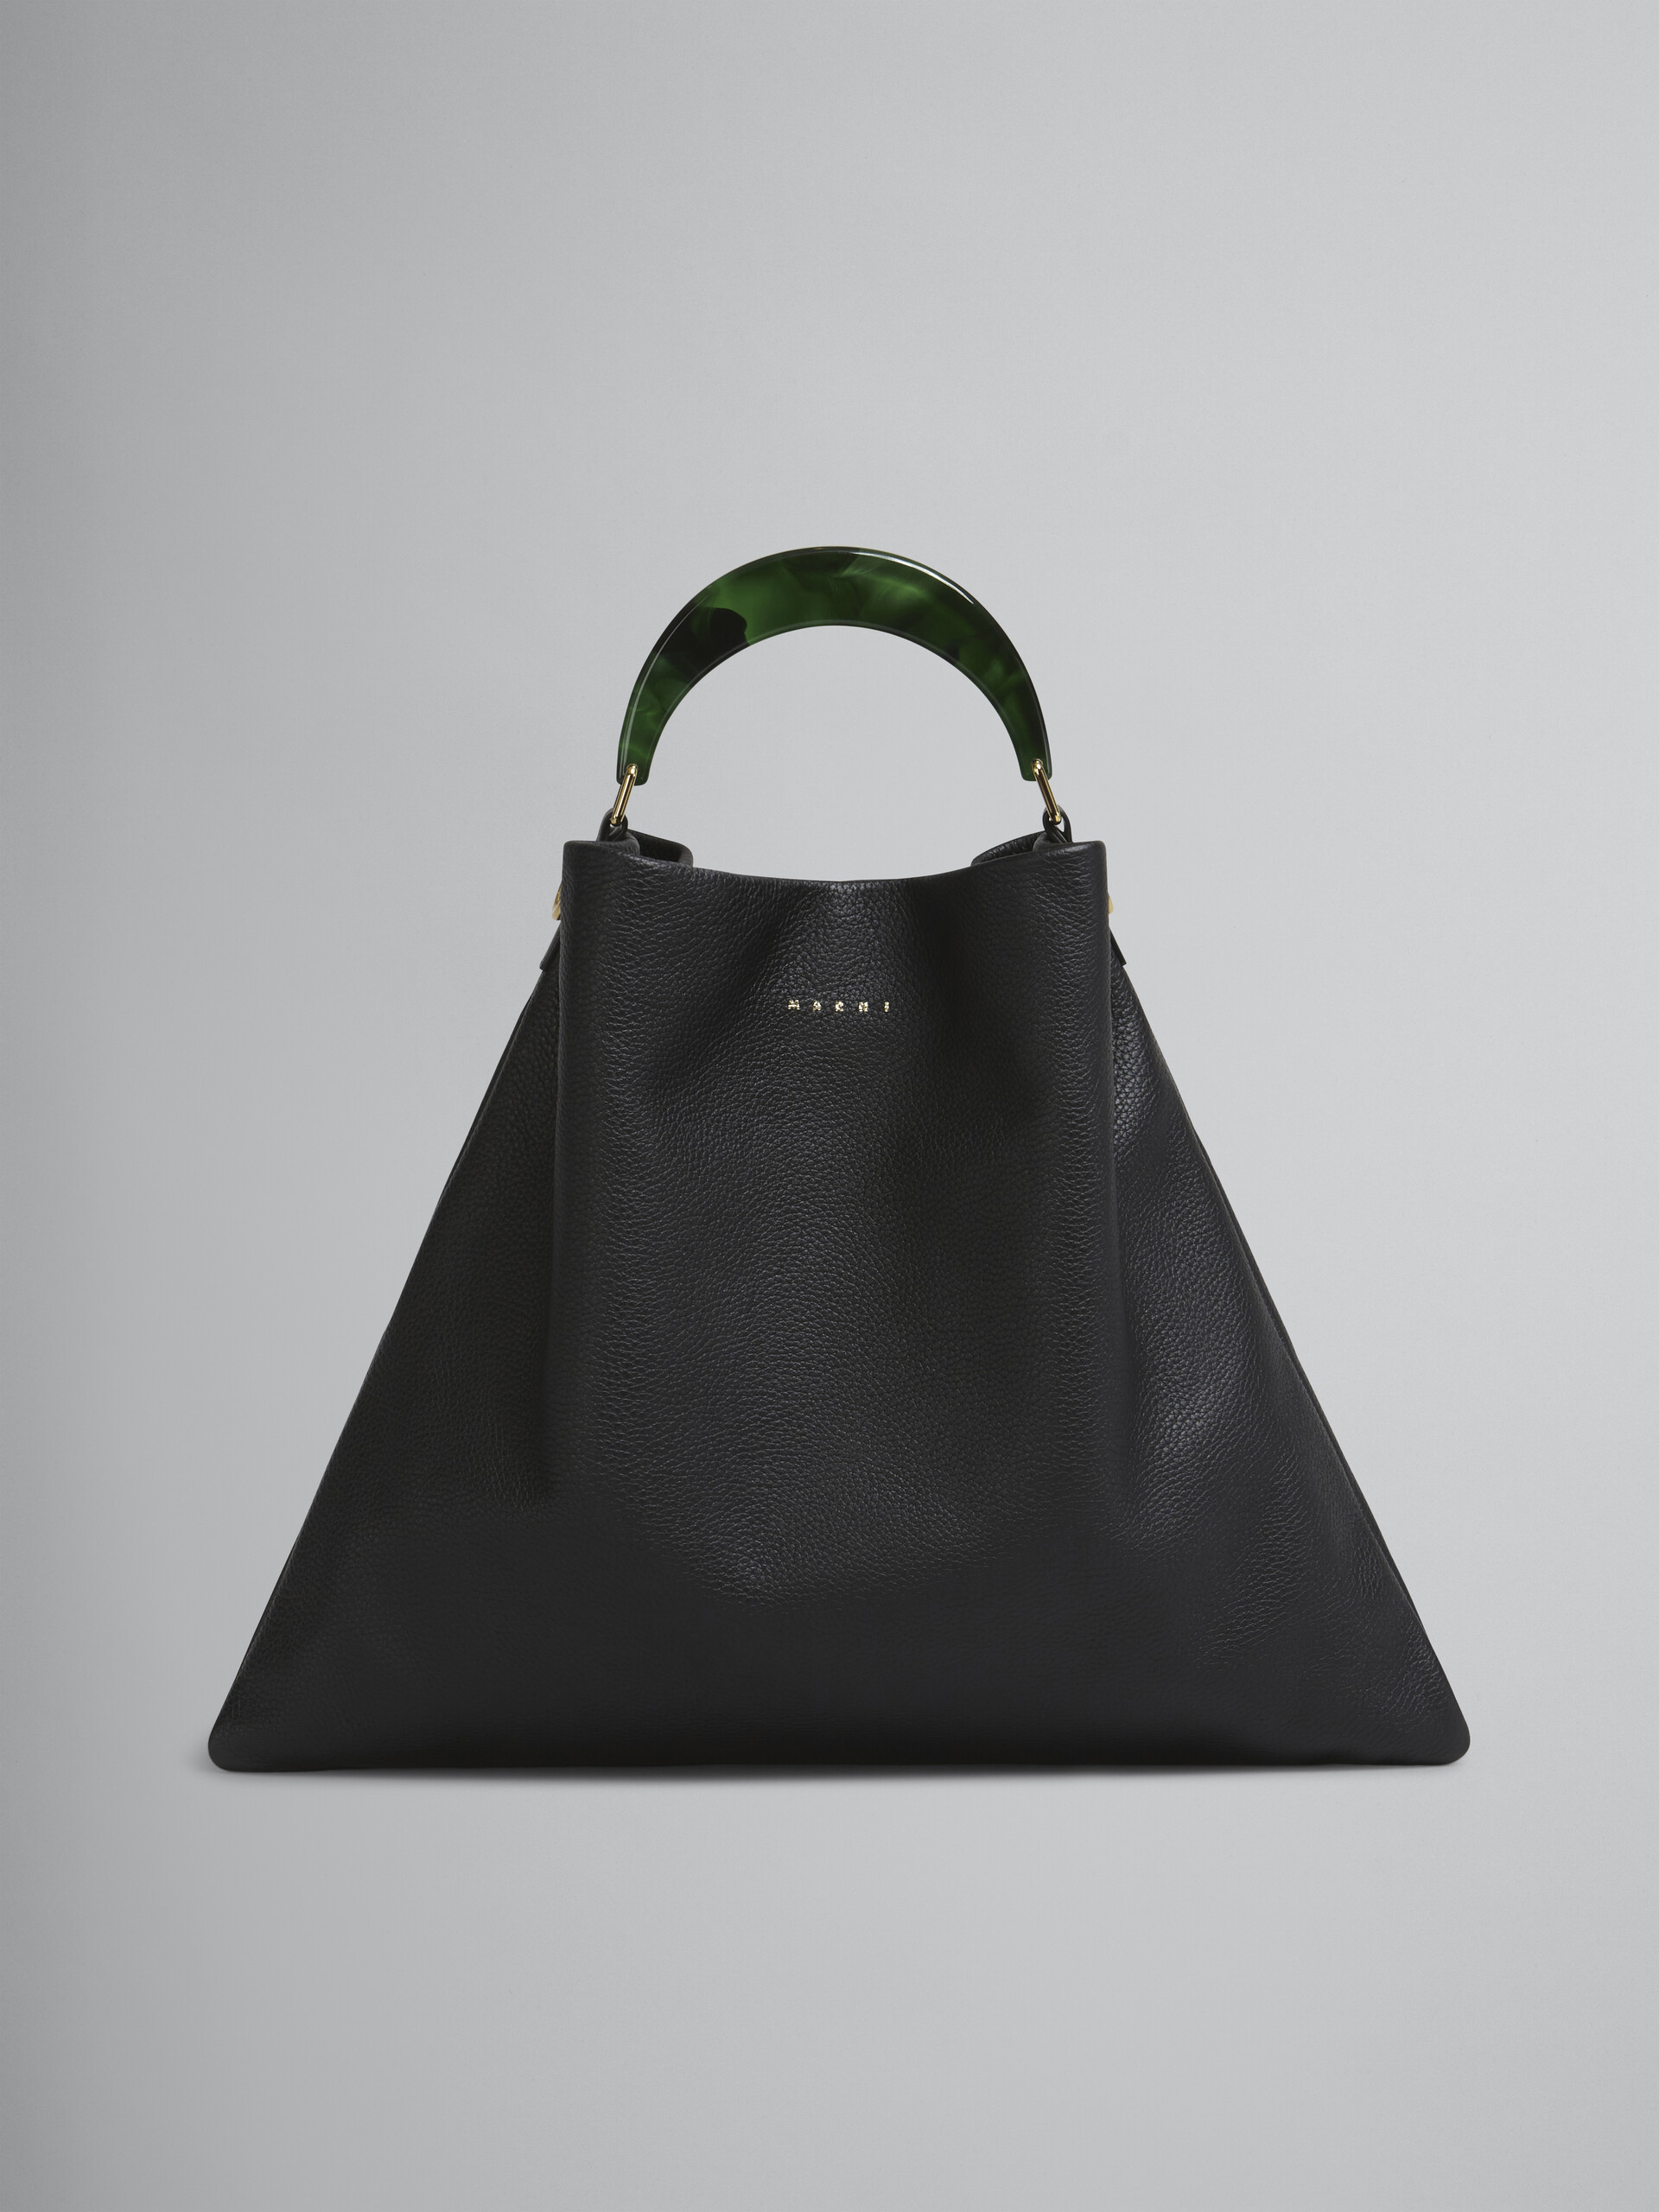 HOBO bag in black grained calfskin and resin handle - Shoulder Bag - Image 1